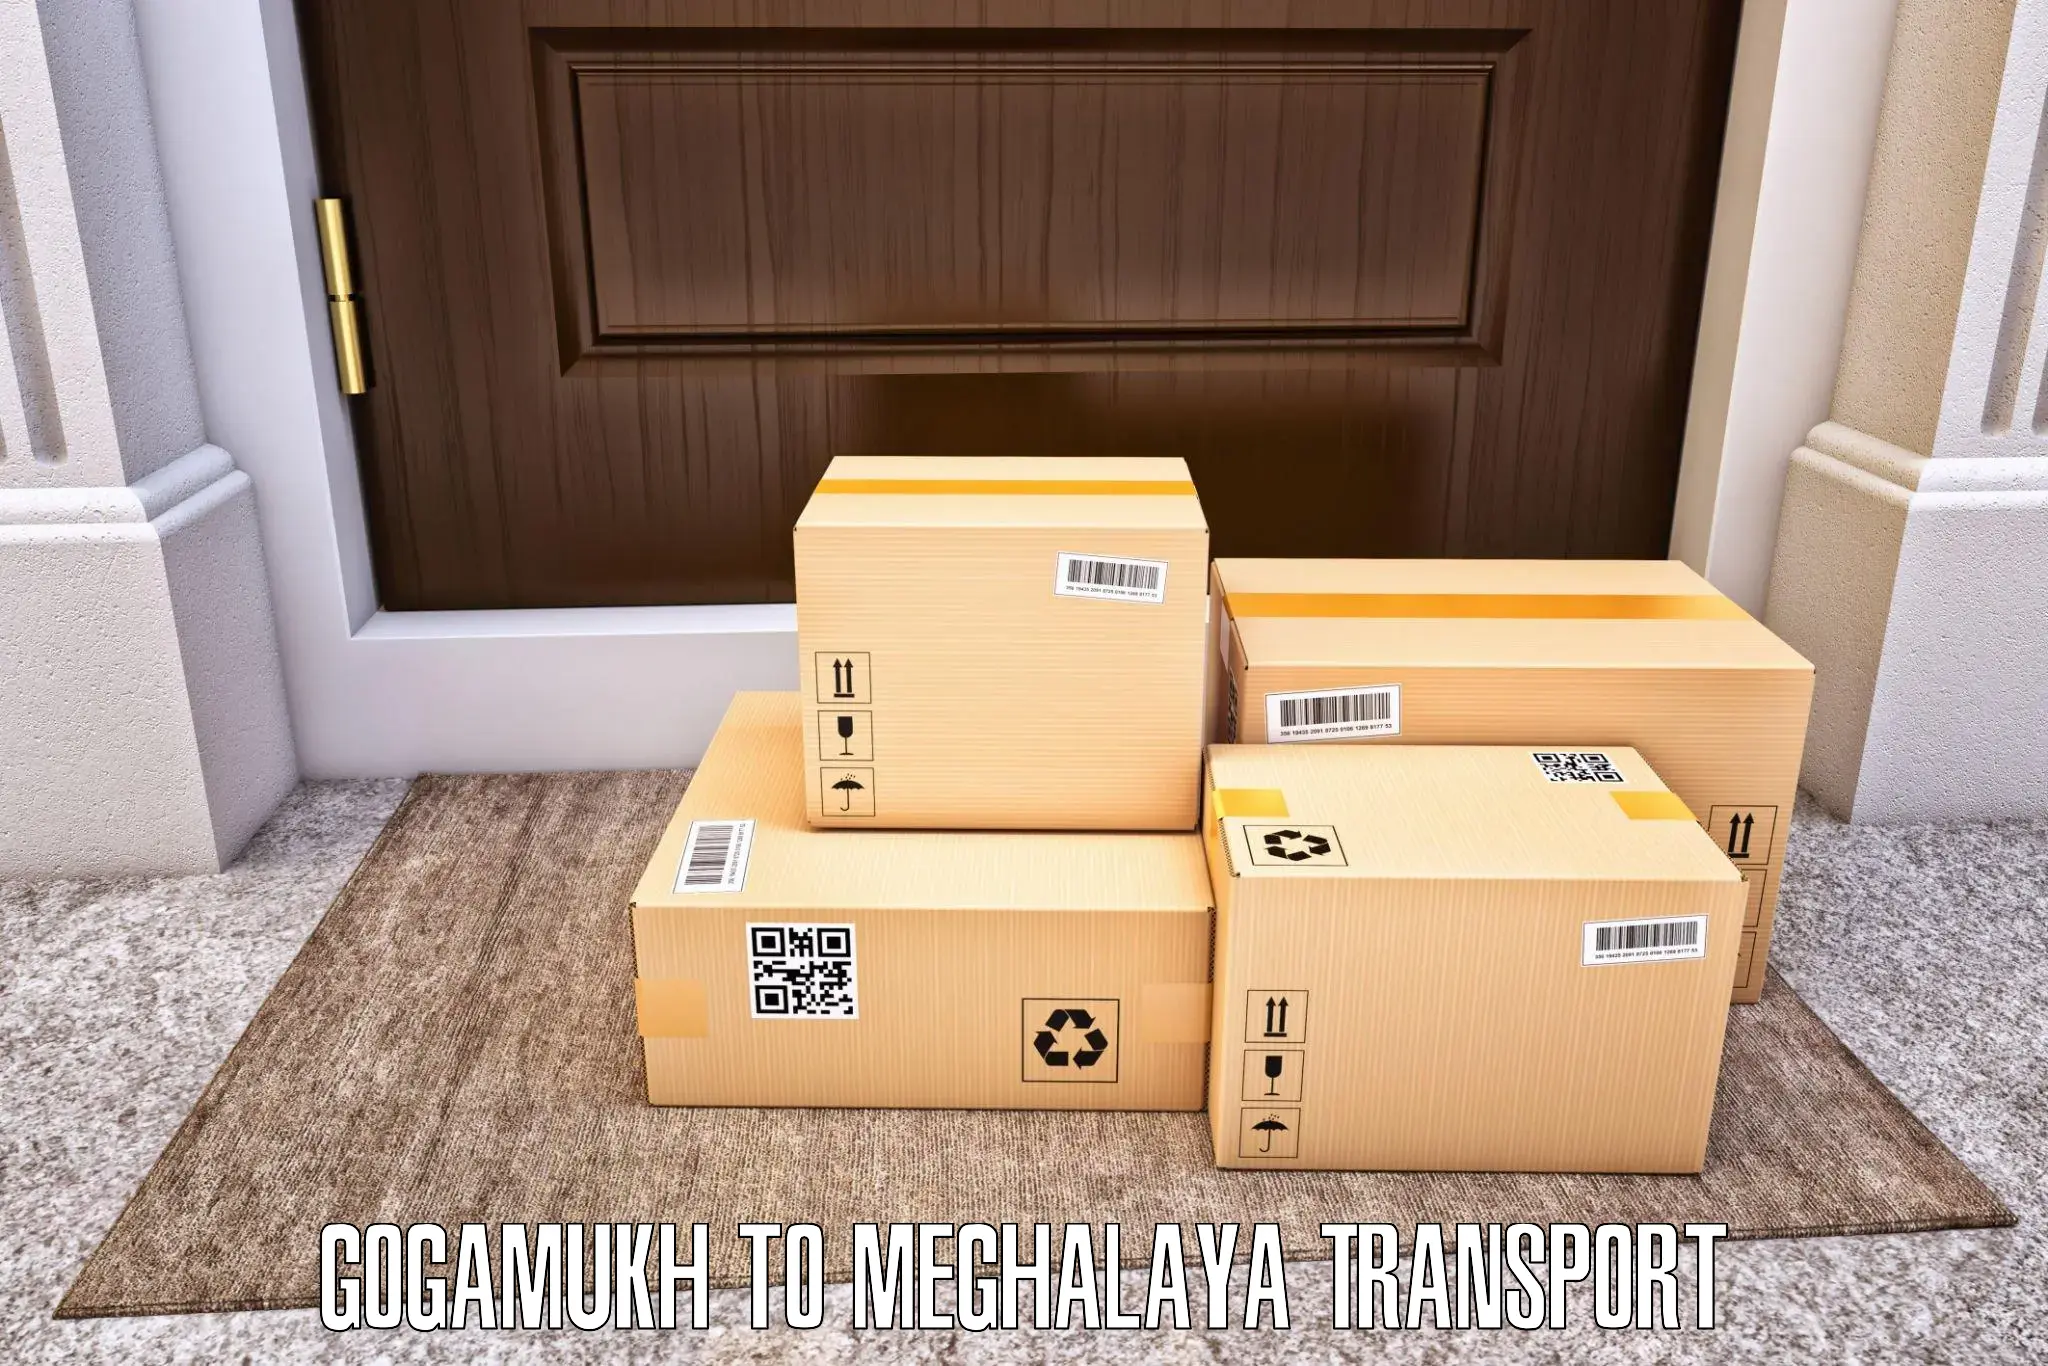 Vehicle transport services Gogamukh to Tikrikilla